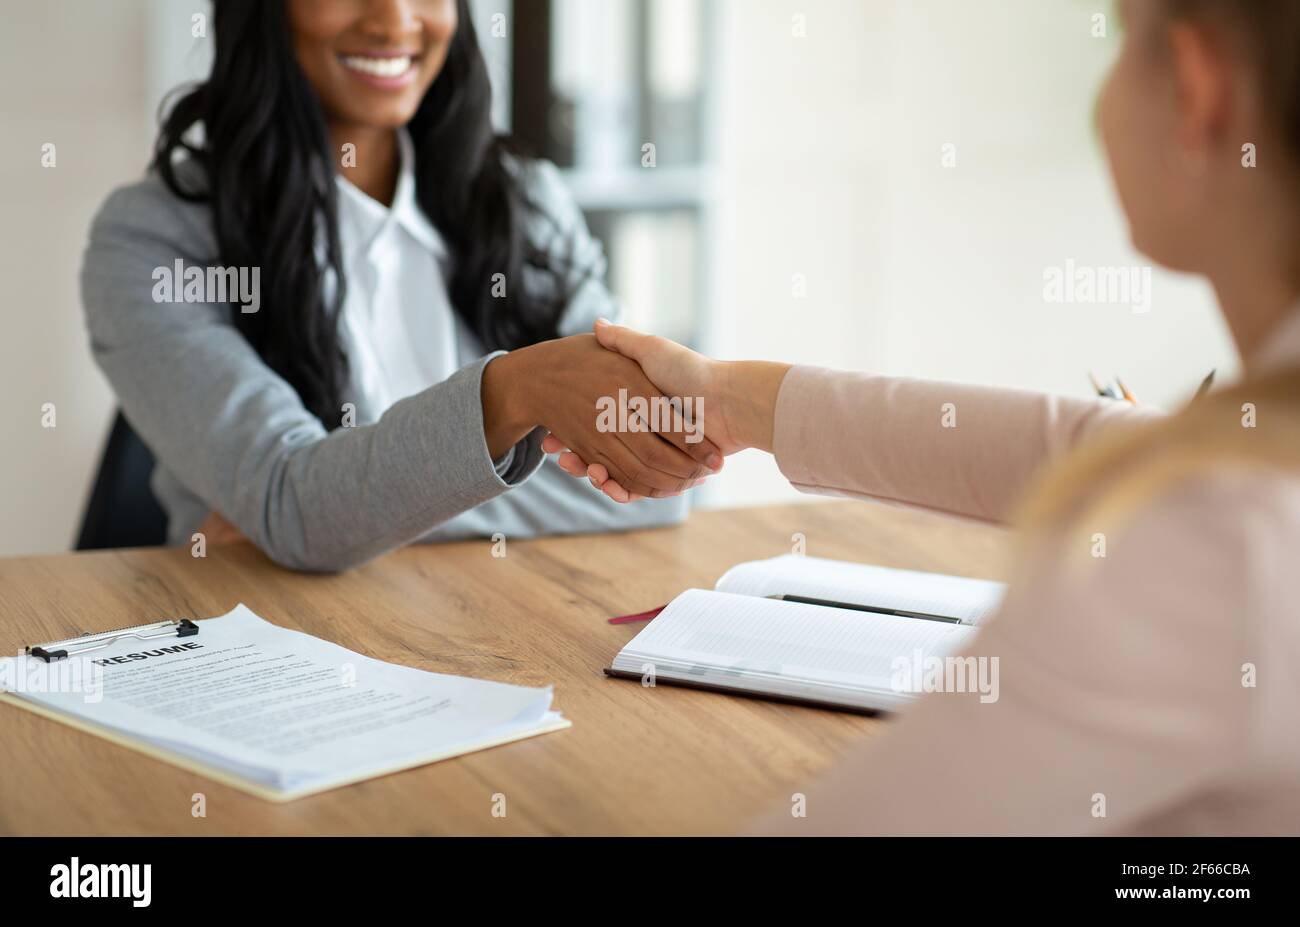 Beschnittene Ansicht des afroamerikanischen Personalmanagers, der die Hand schüttelt Stellenbewerber während des Vorstellungsgesprächs im Büro Stockfoto